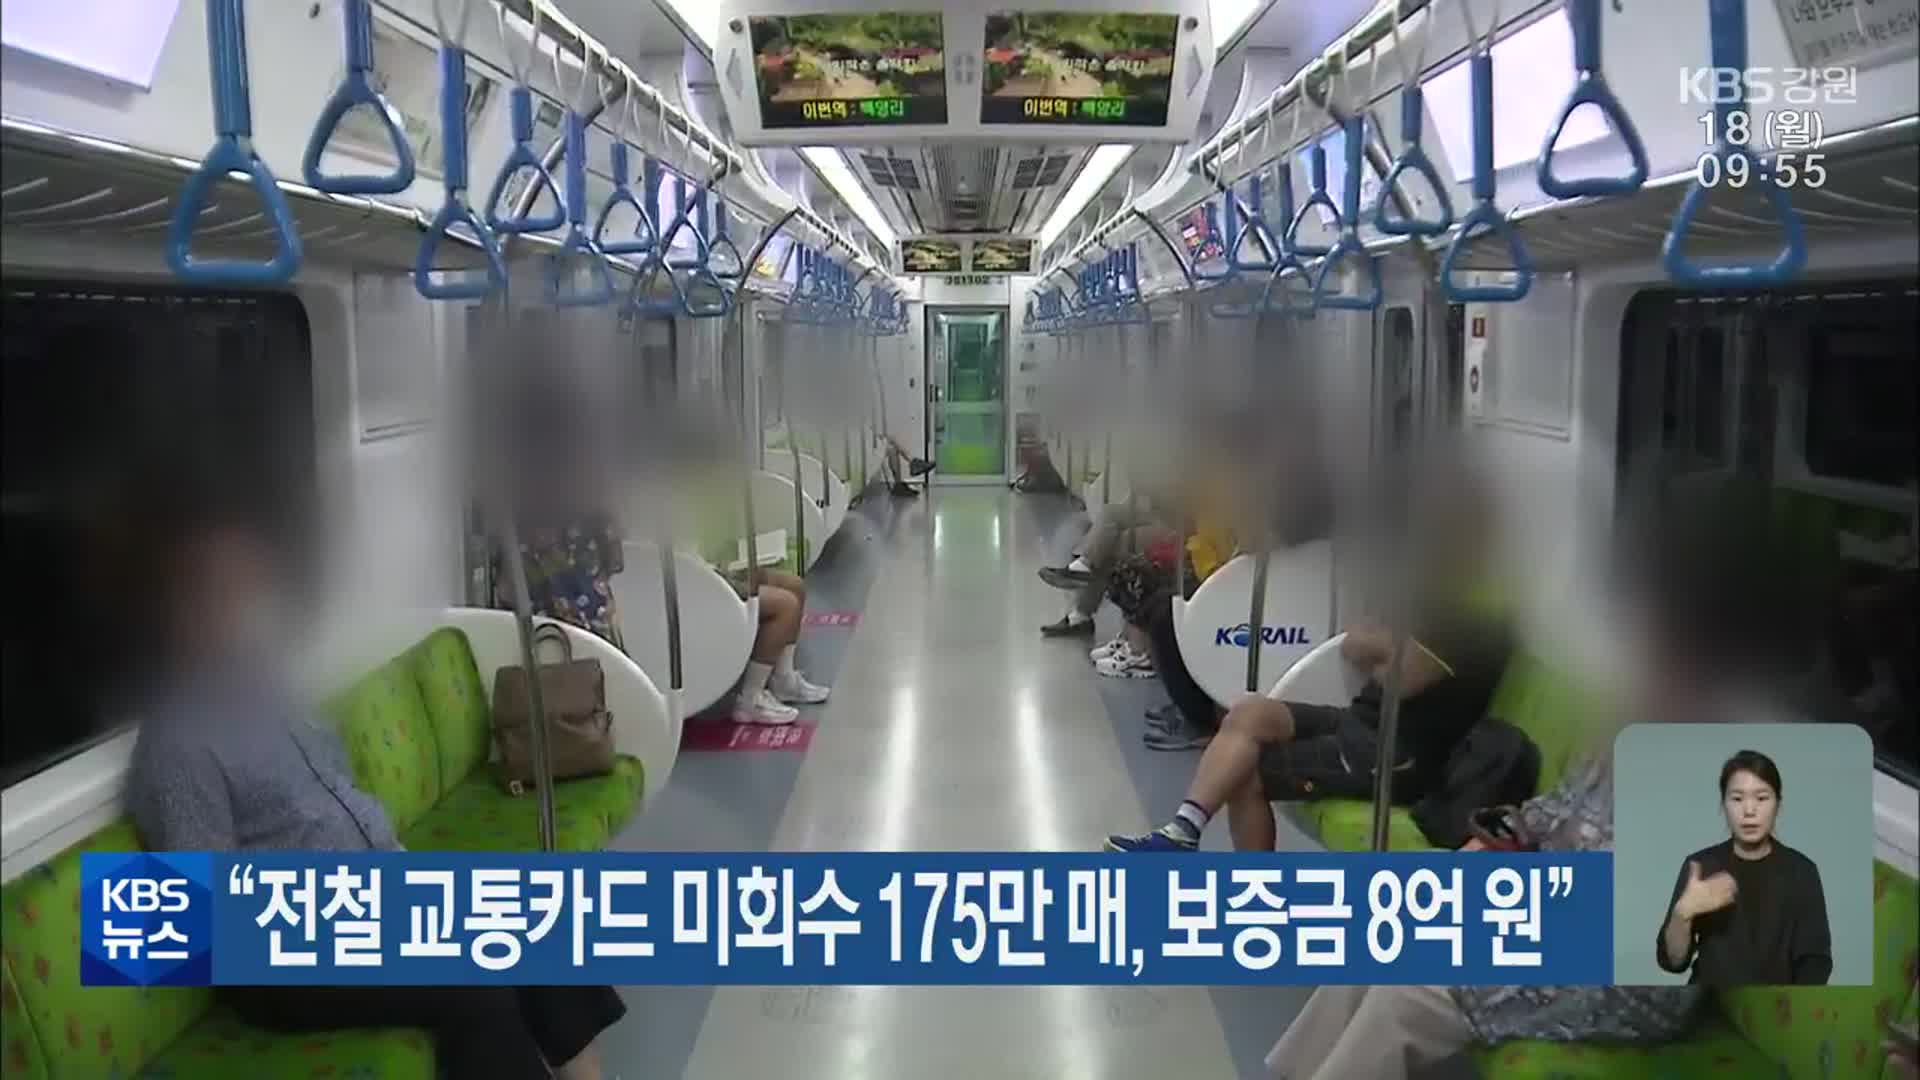 “전철 교통카드 미회수 175만 매, 보증금 8억 원”